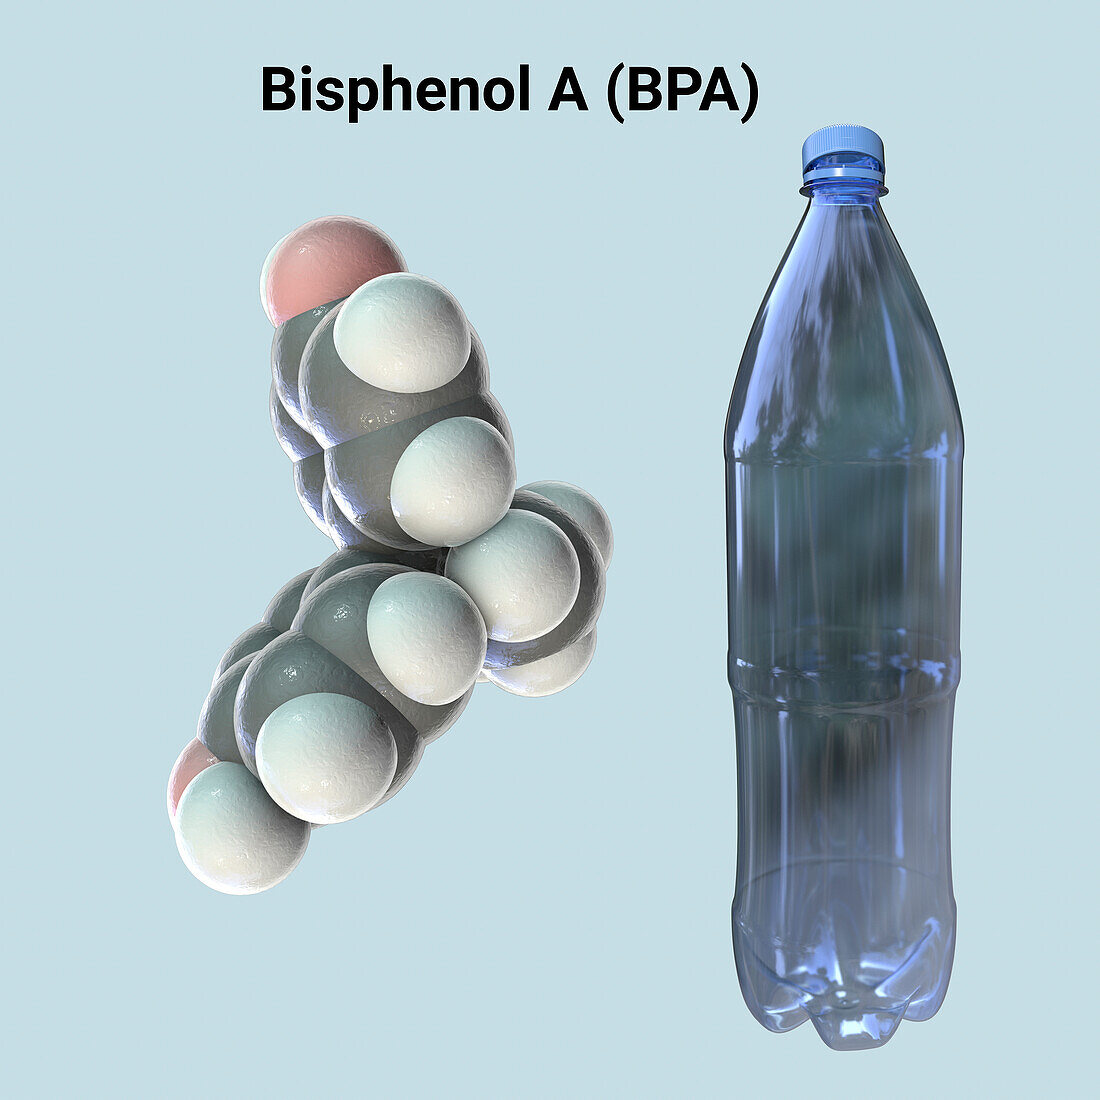 Bisphenol A molecule and plastic bottle, illustration